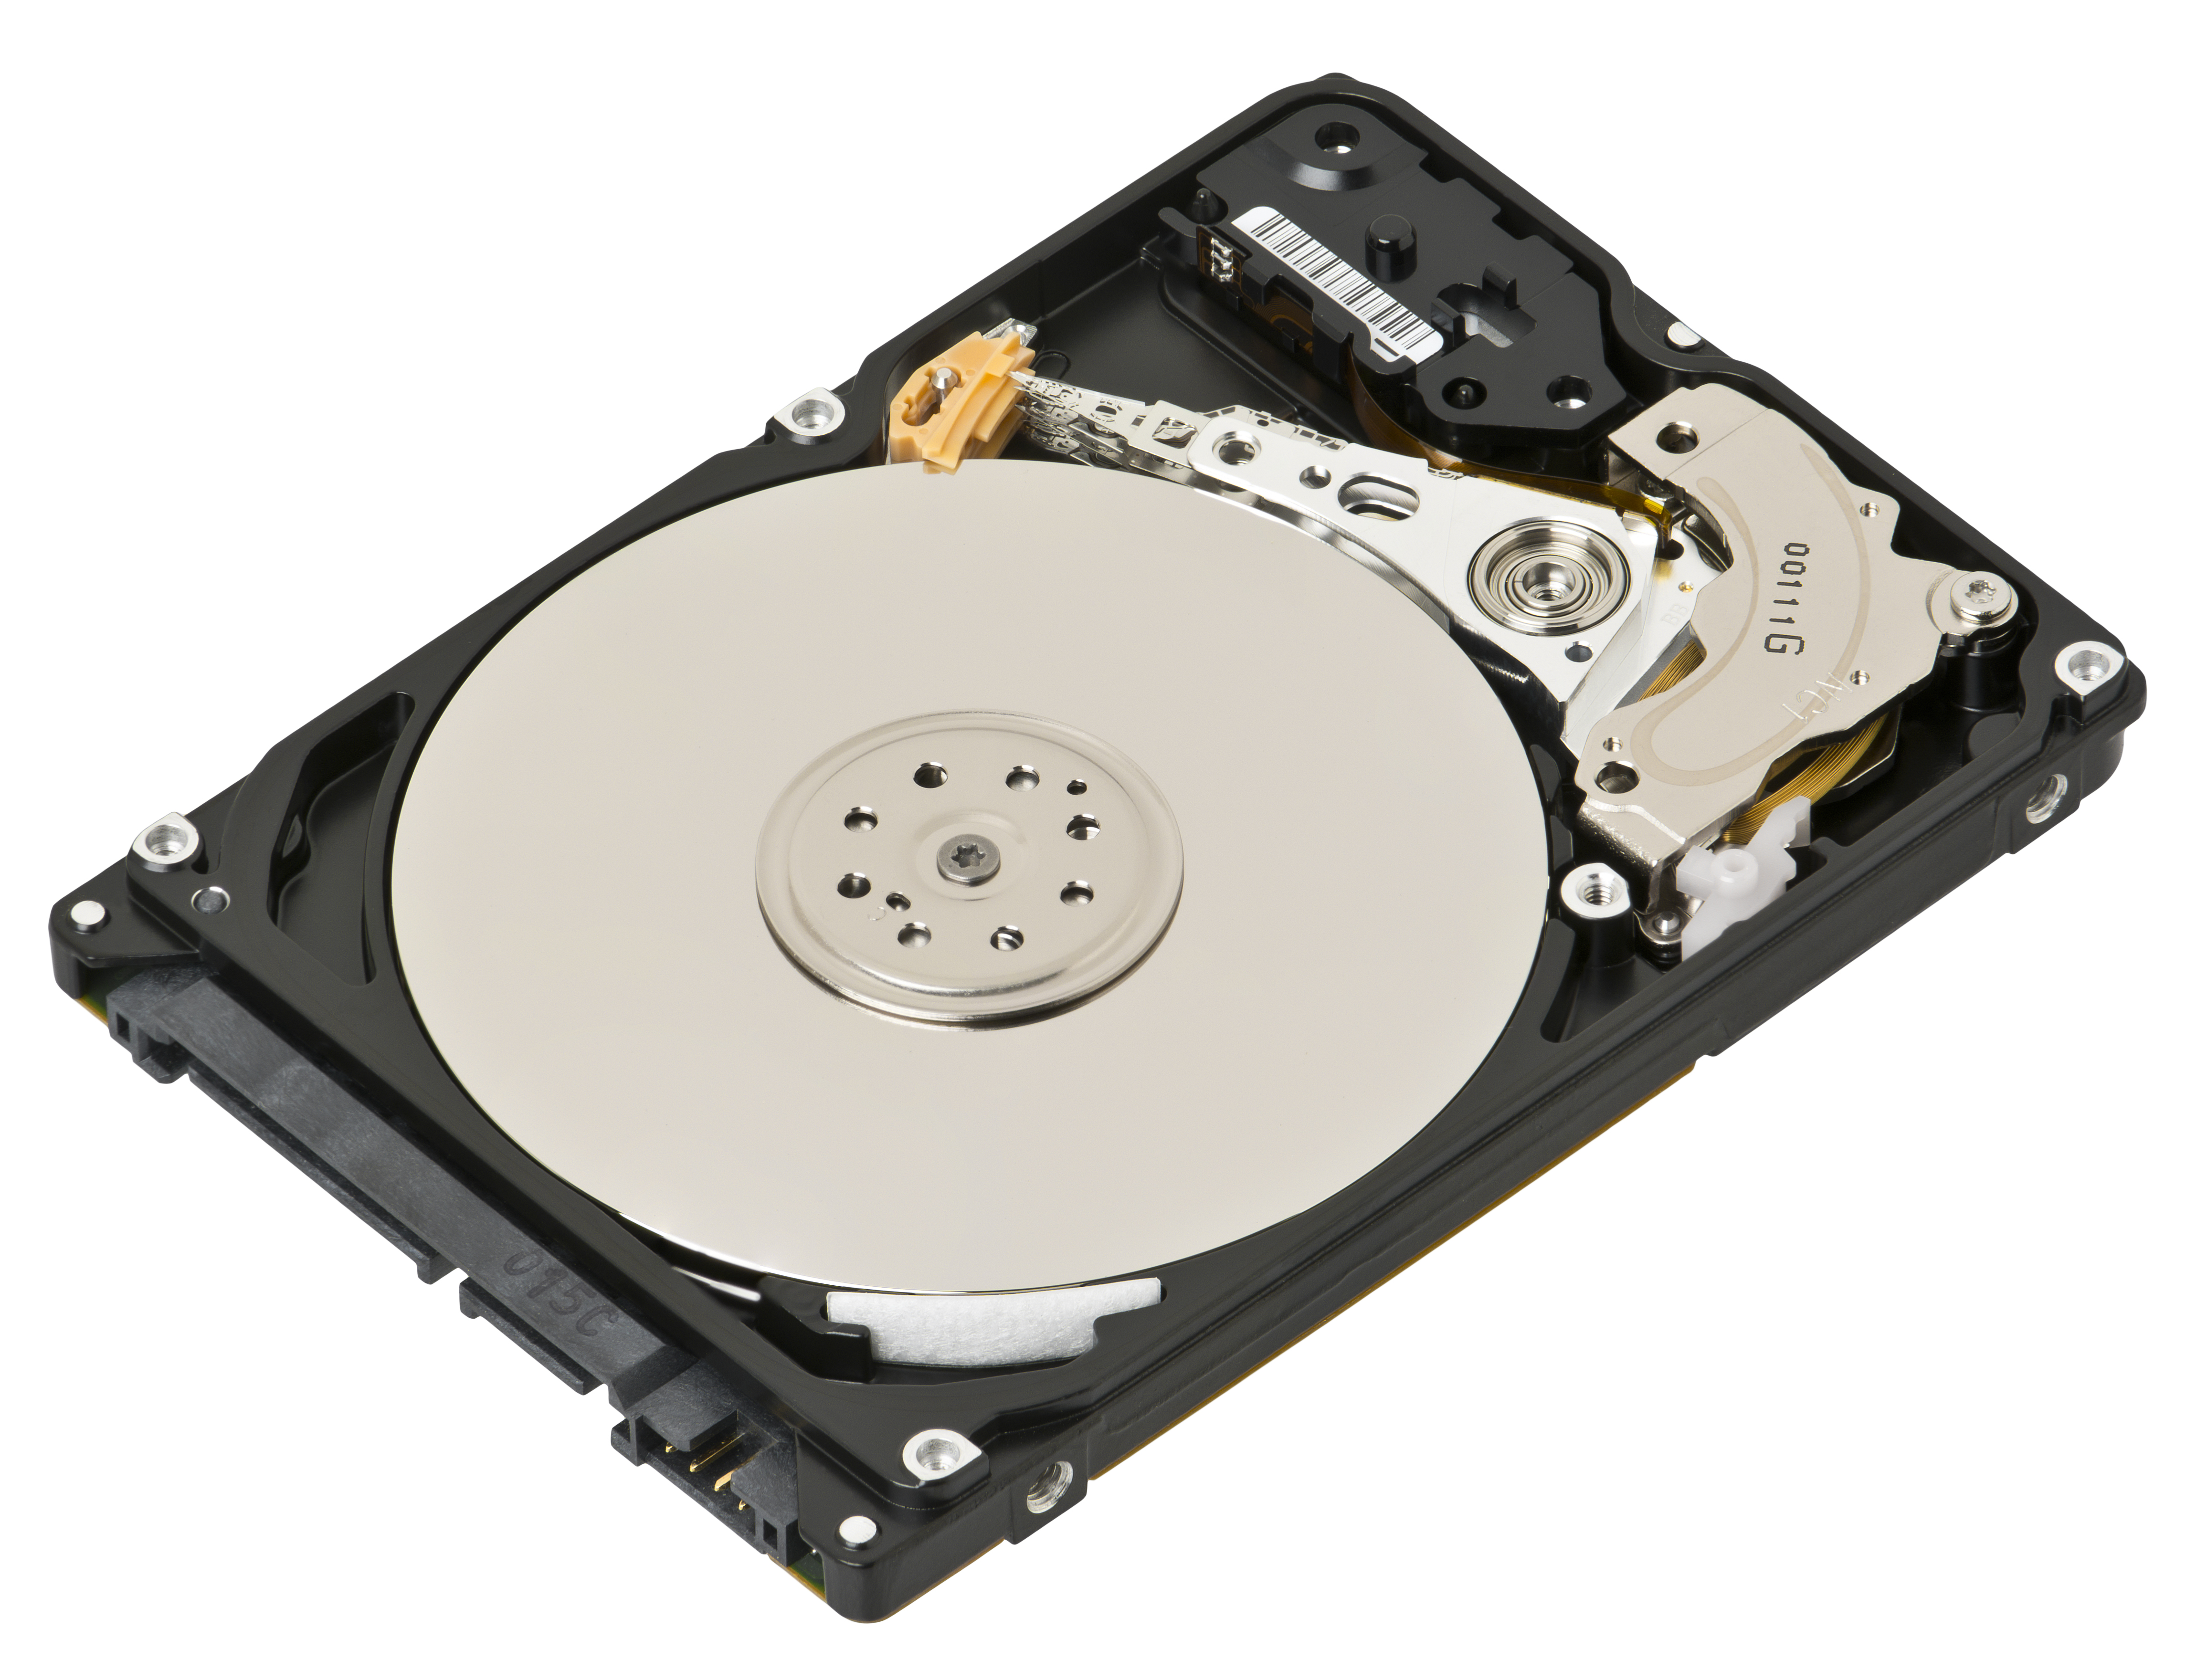 Dell U8468 hard disk drive 250GB 3.5 inch SATA 7200RPM